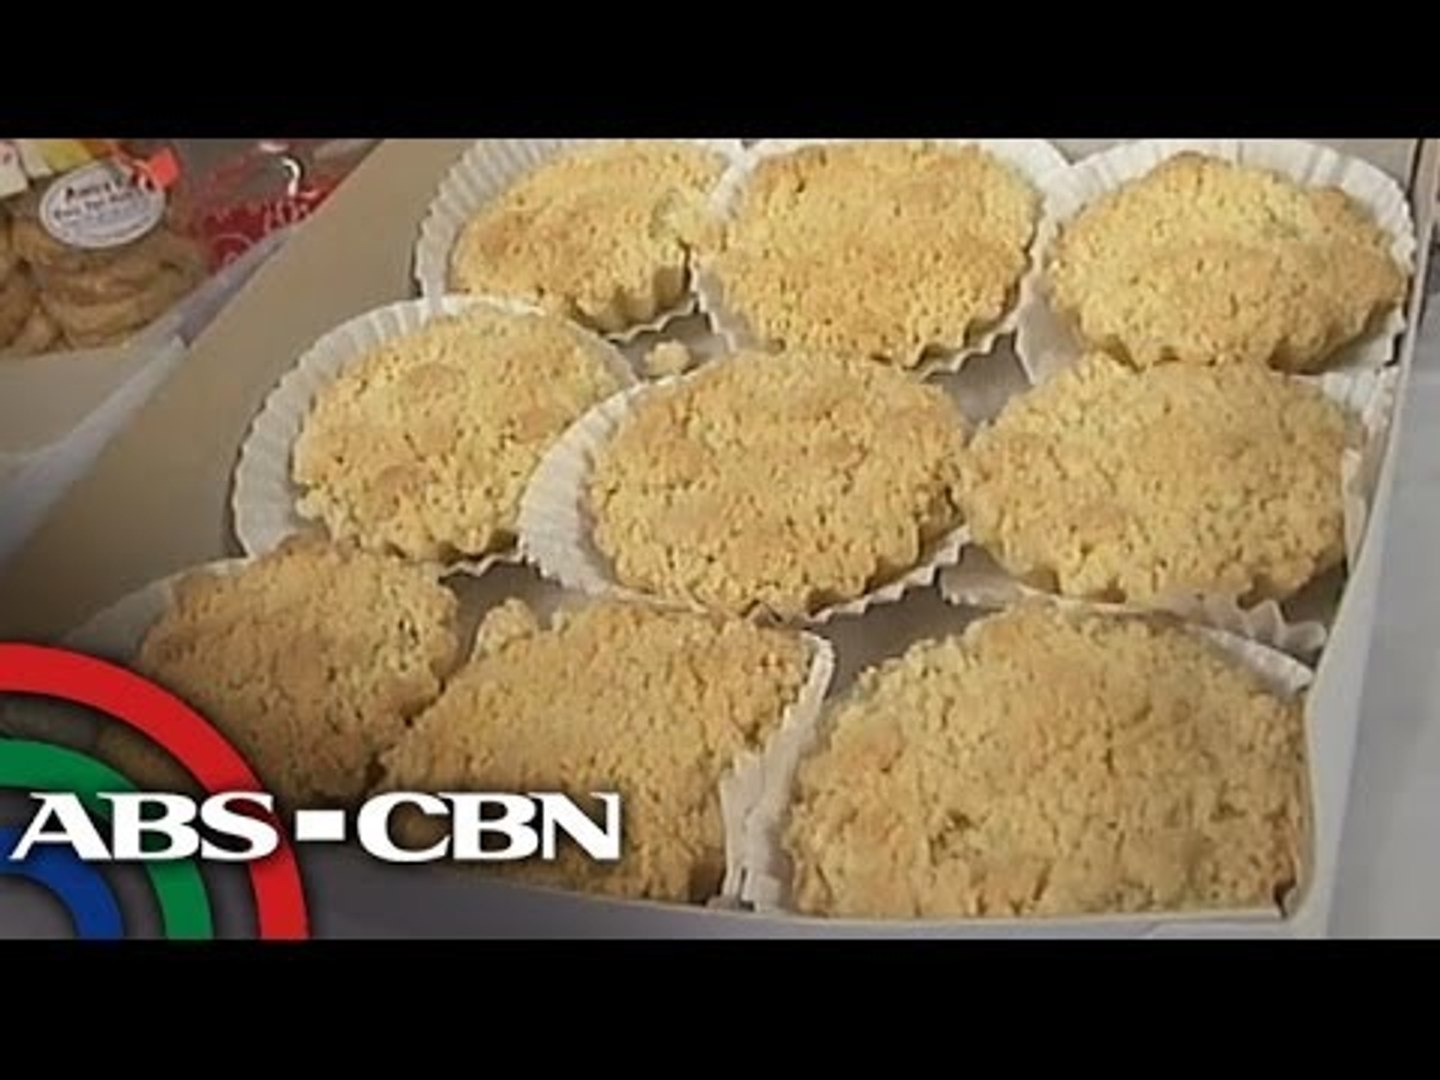 Kris Aquino tries Amira's Buco Tart